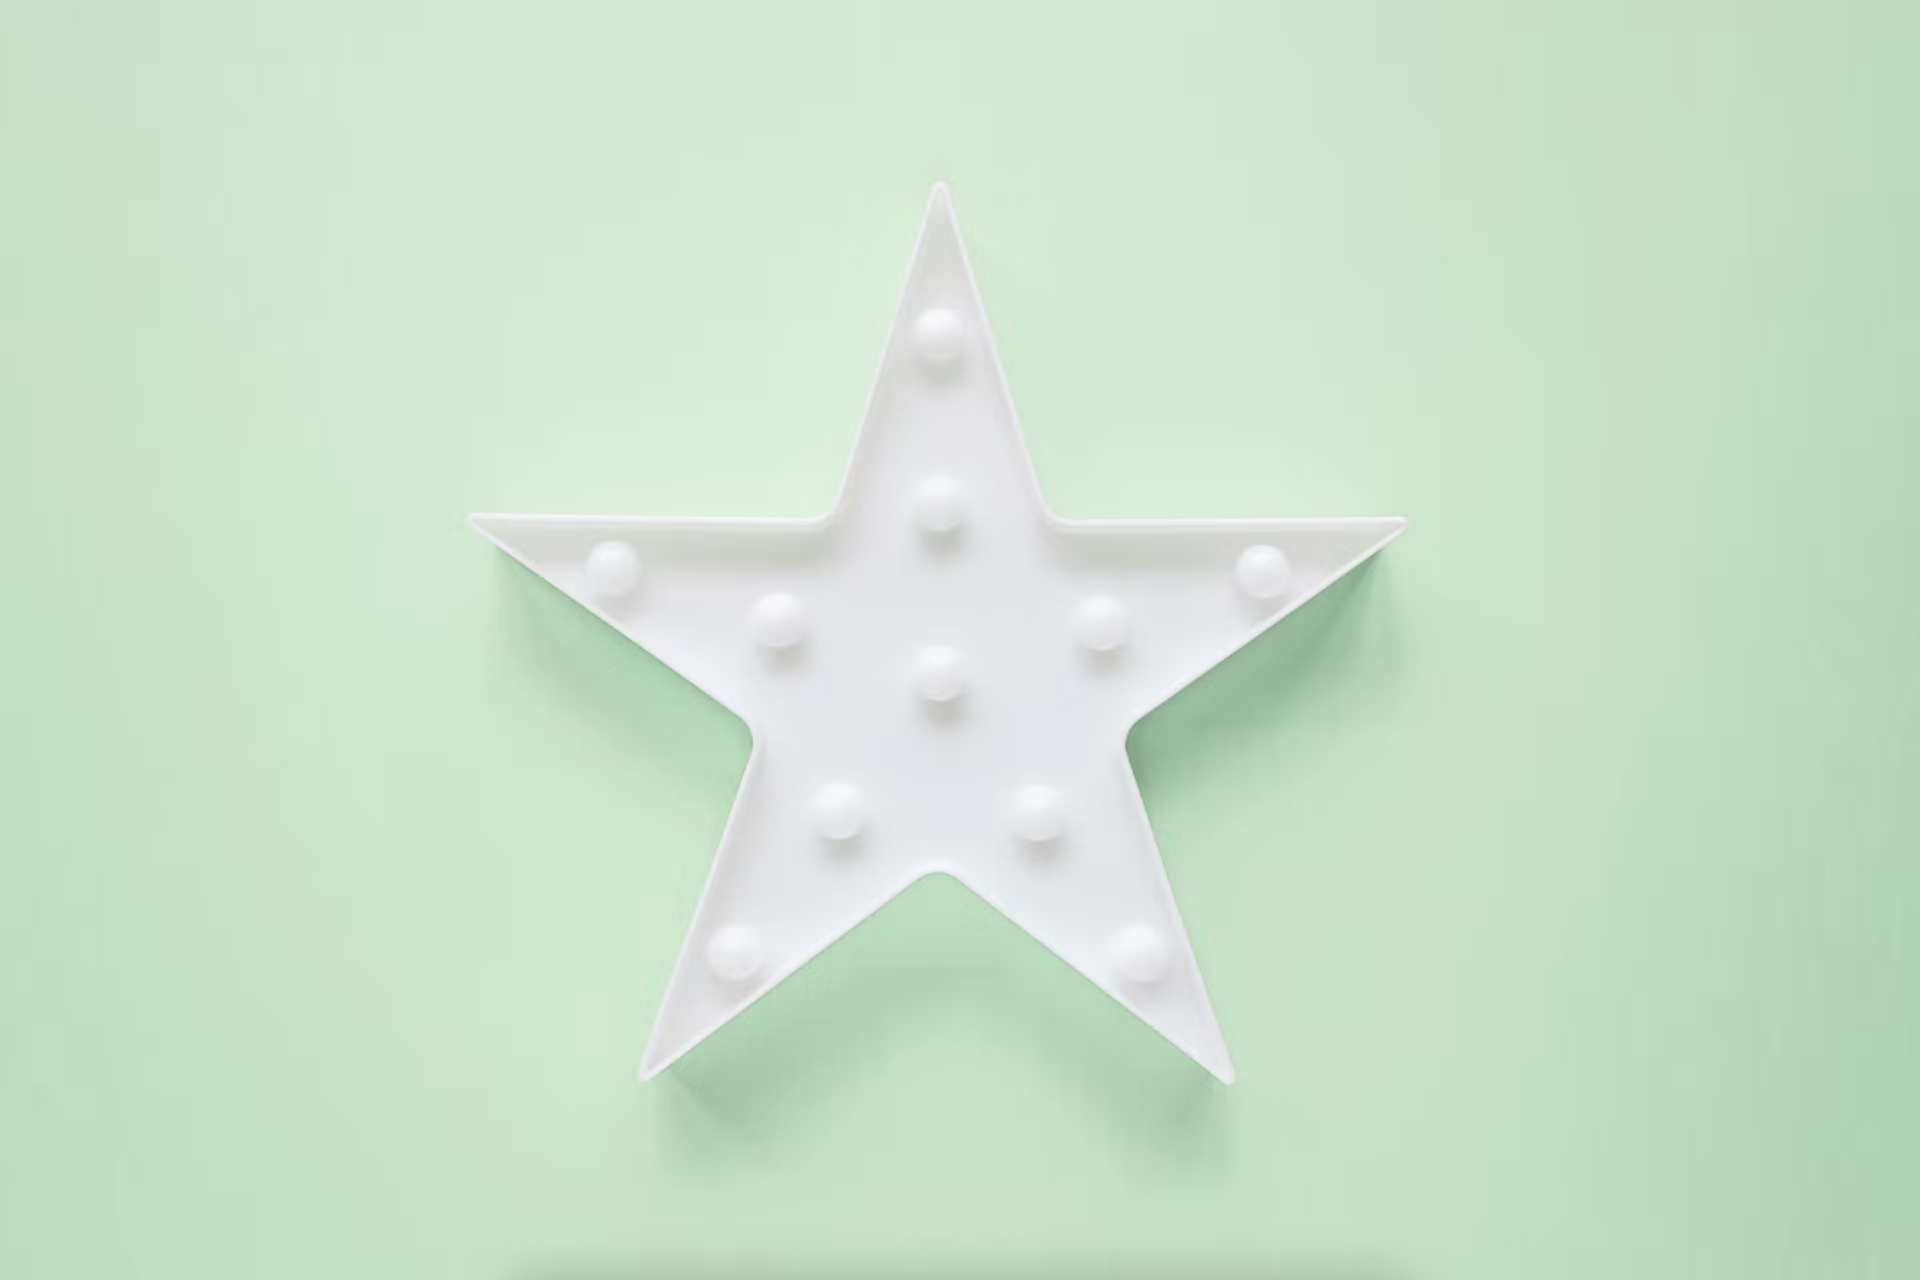 Ein weißer Stern vor einem hellgrünen minzfarbenen Hintergrund